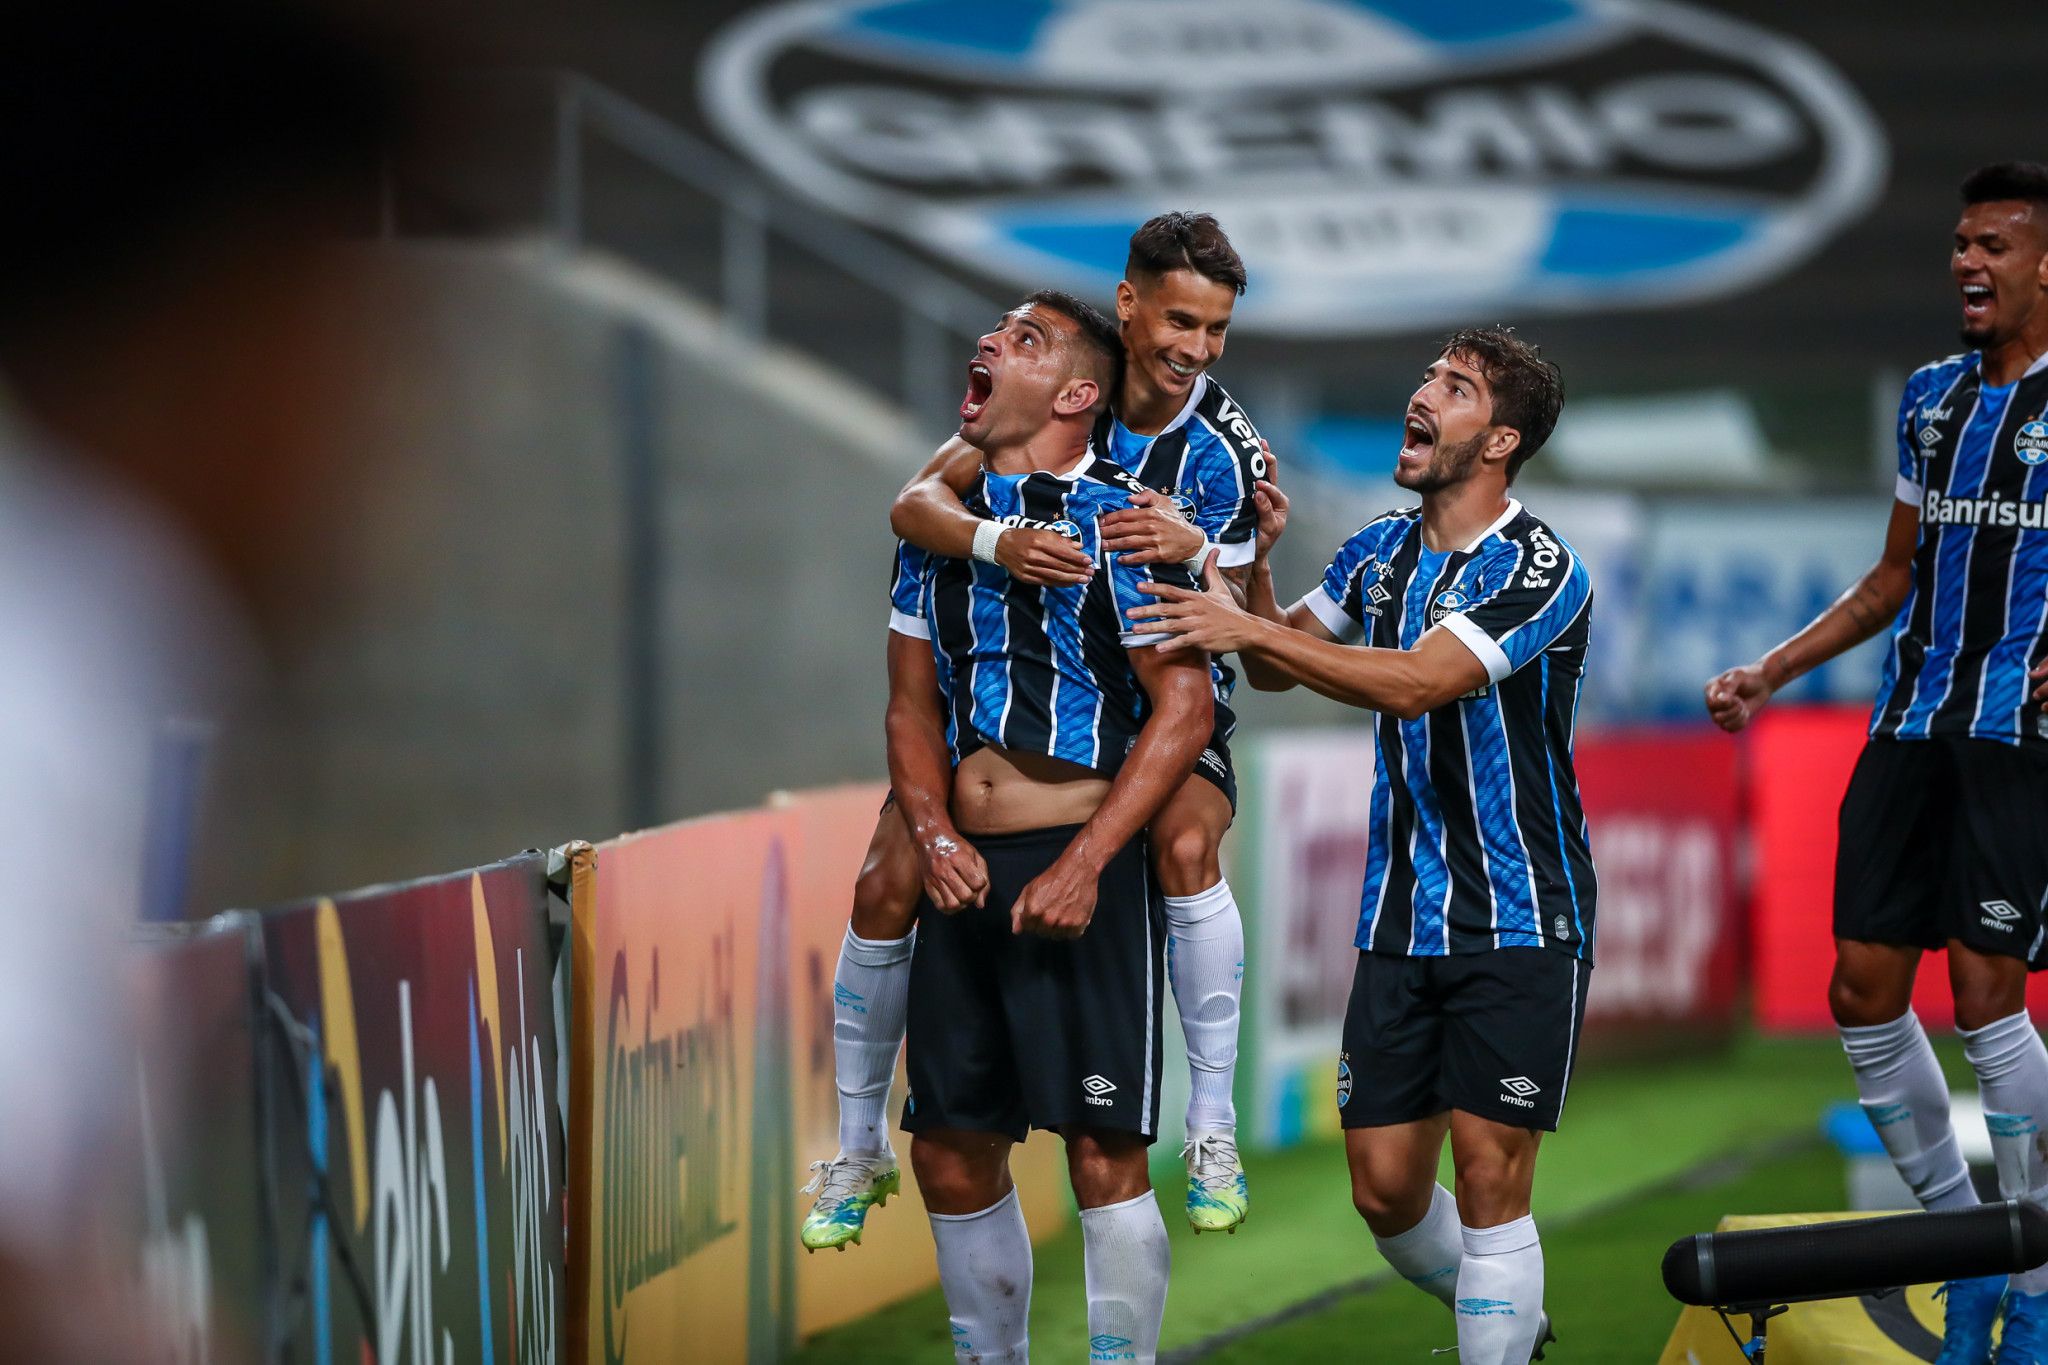 Retorno de Portaluppi ao Tricolor Imortal garante novas perspectivas ao time, além da possibilidade de contratar reforços para garantir que o Grêmio volte à elite do futebol brasileiro